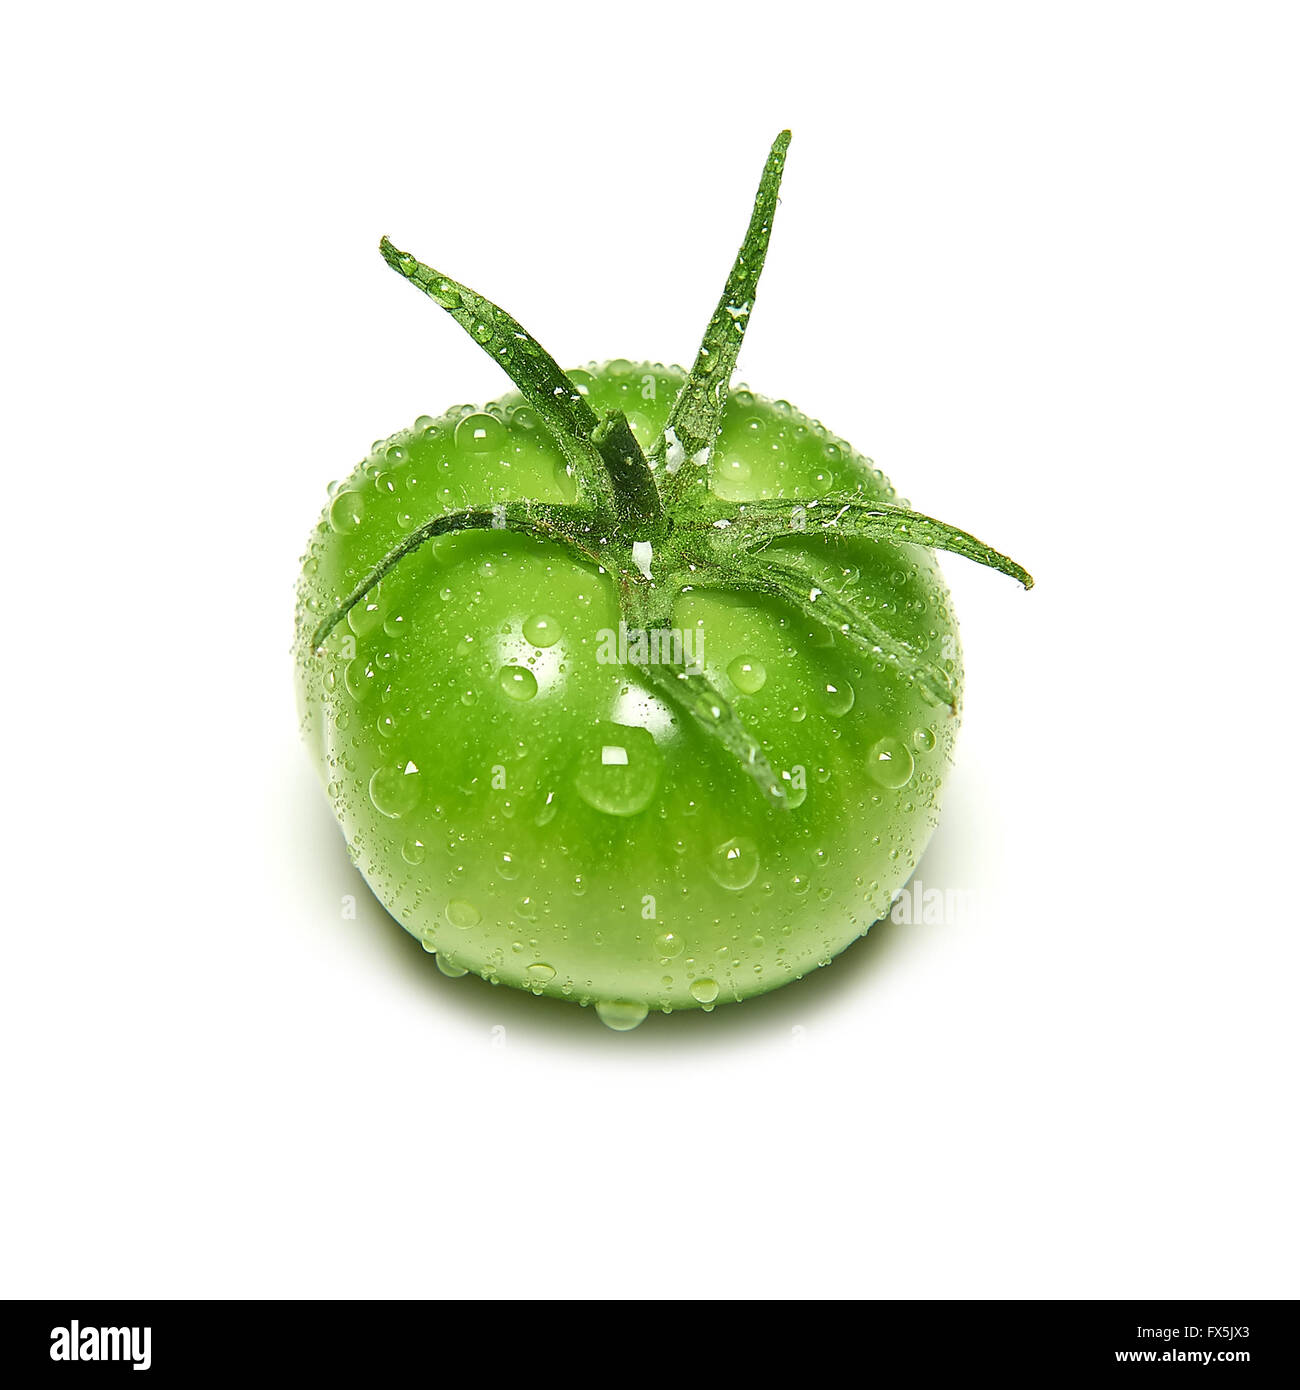 Immaturo del pomodoro verde isolato su bianco Foto Stock